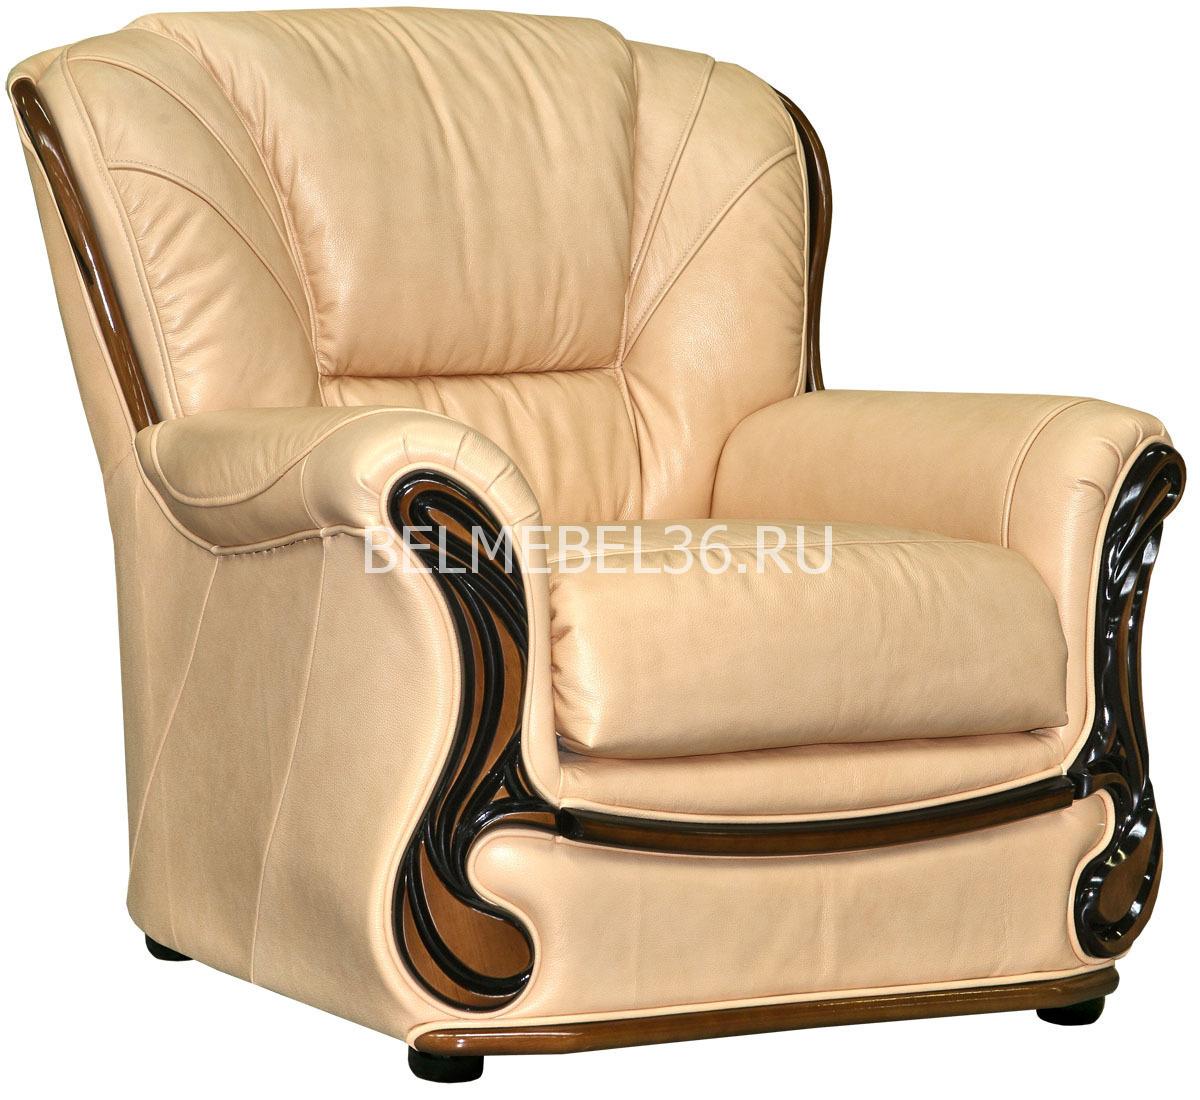 Кресло Изабель 2 (12) П-Д067 | Белорусская мебель в Воронеже